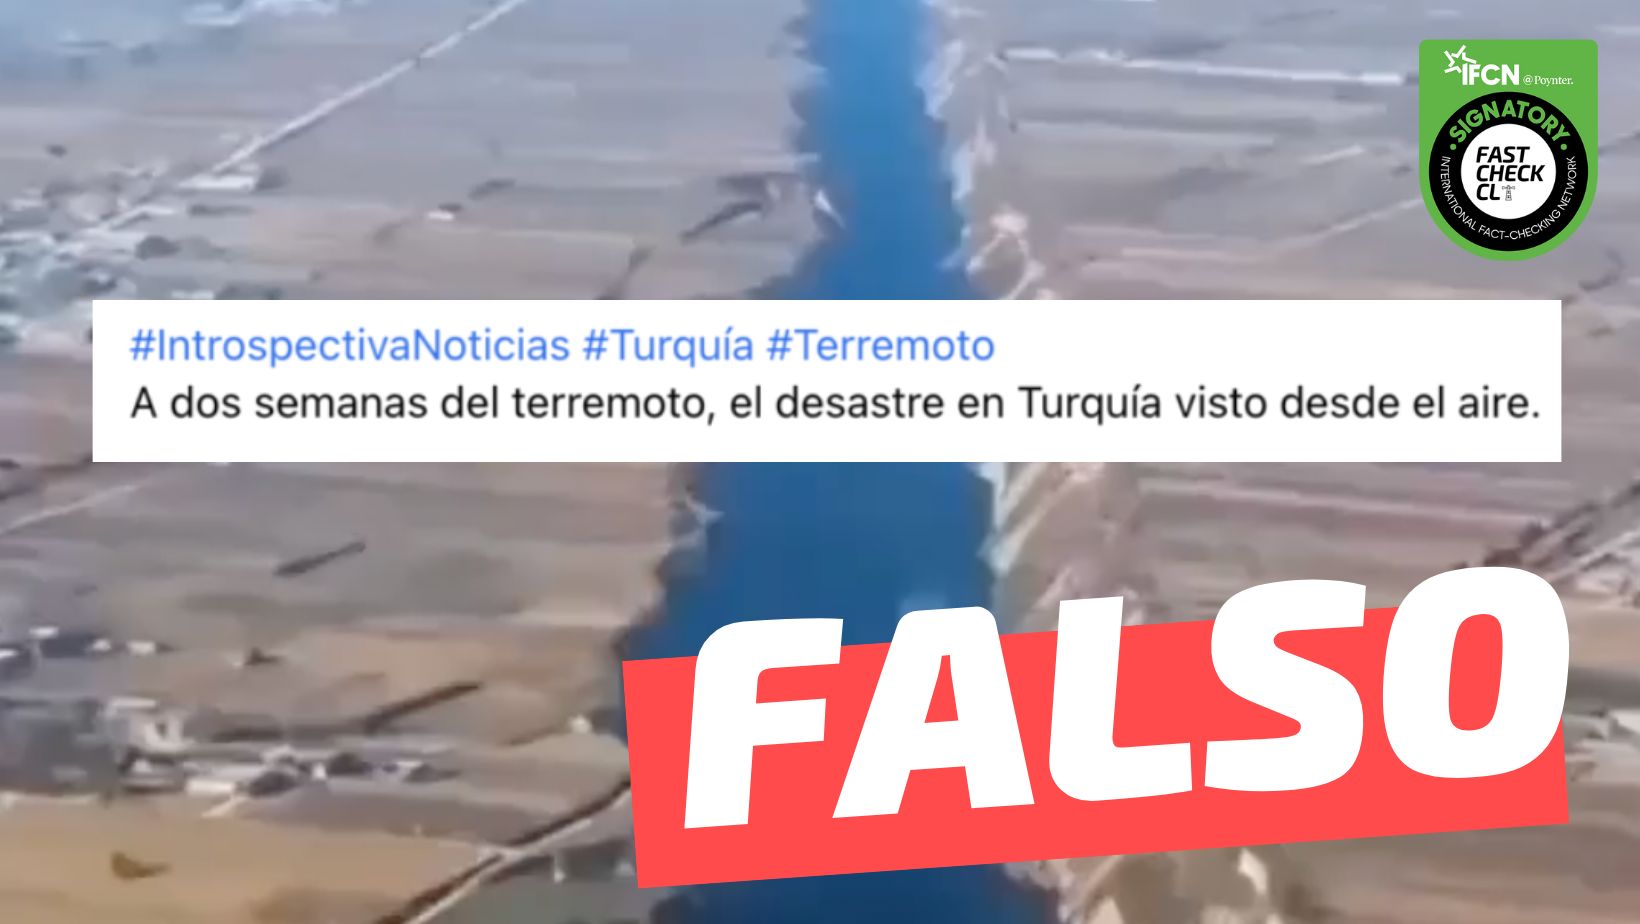 You are currently viewing (Imagen) “A semanas del terremoto, el desastre en Turquía visto desde el aire”: #Falso